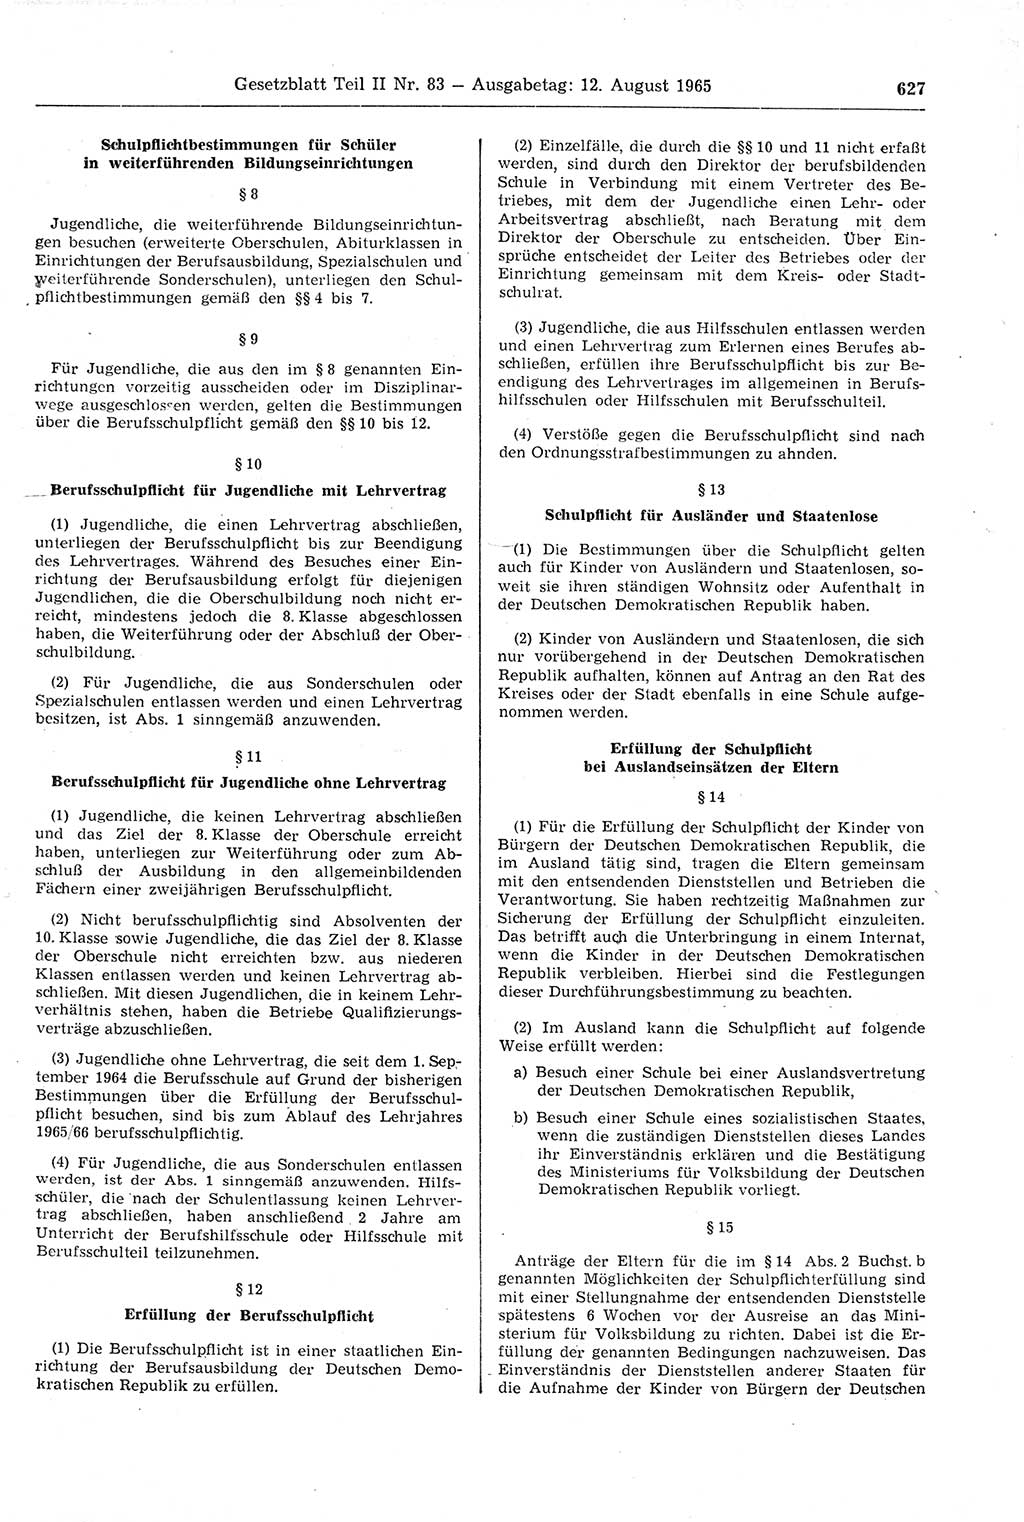 Gesetzblatt (GBl.) der Deutschen Demokratischen Republik (DDR) Teil ⅠⅠ 1965, Seite 627 (GBl. DDR ⅠⅠ 1965, S. 627)